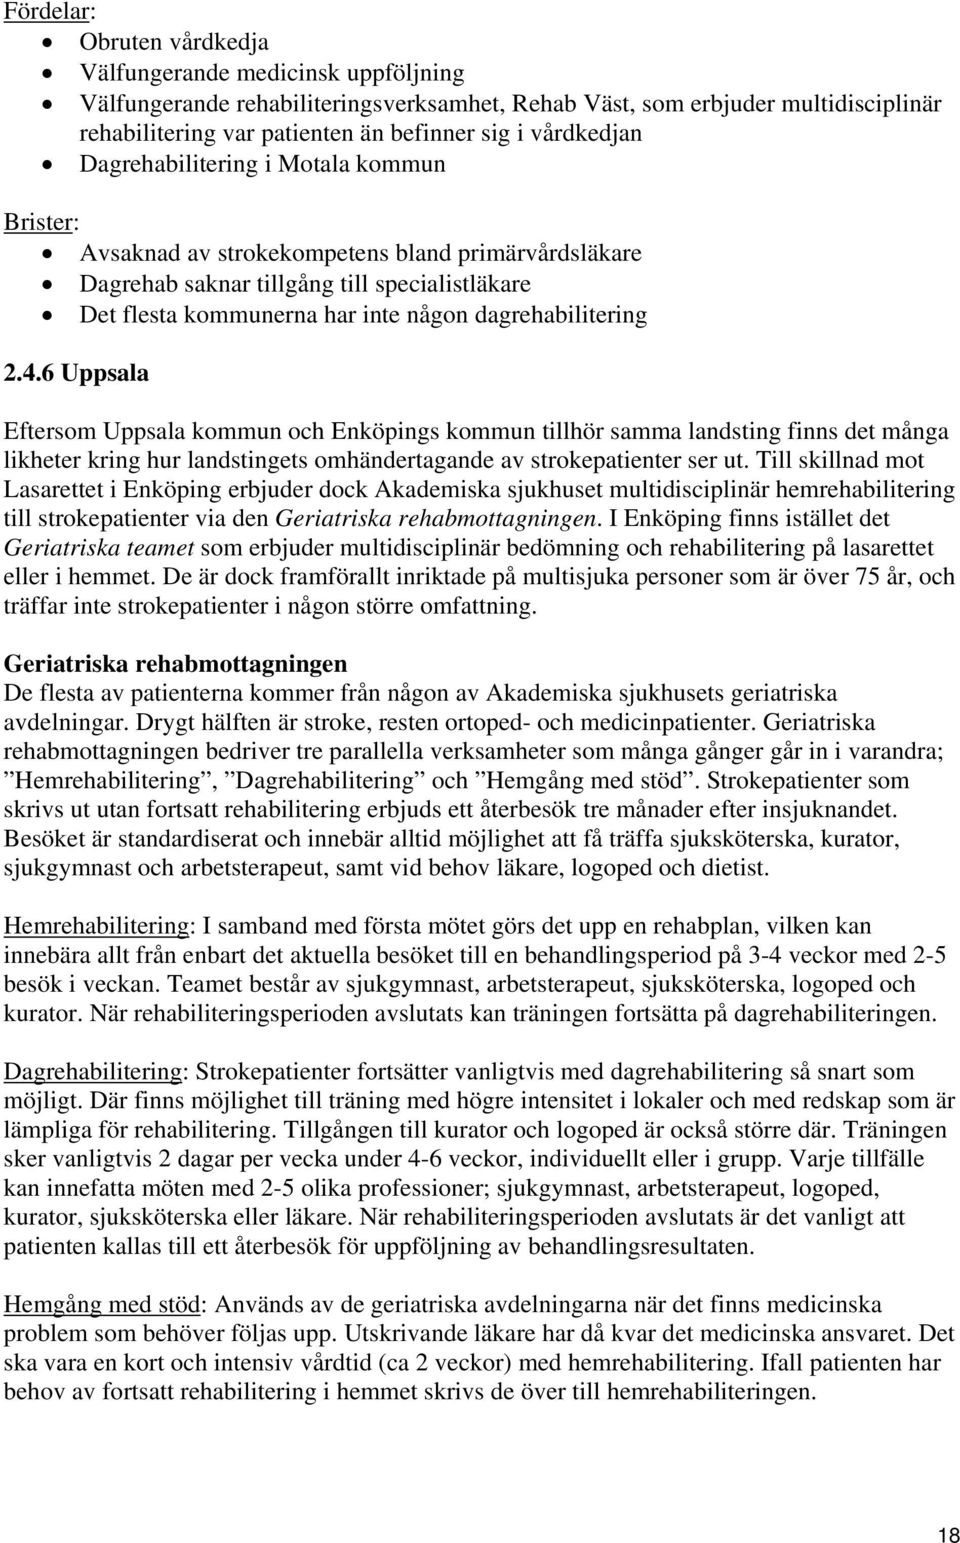 dagrehabilitering 2.4.6 Uppsala Eftersom Uppsala kommun och Enköpings kommun tillhör samma landsting finns det många likheter kring hur landstingets omhändertagande av strokepatienter ser ut.